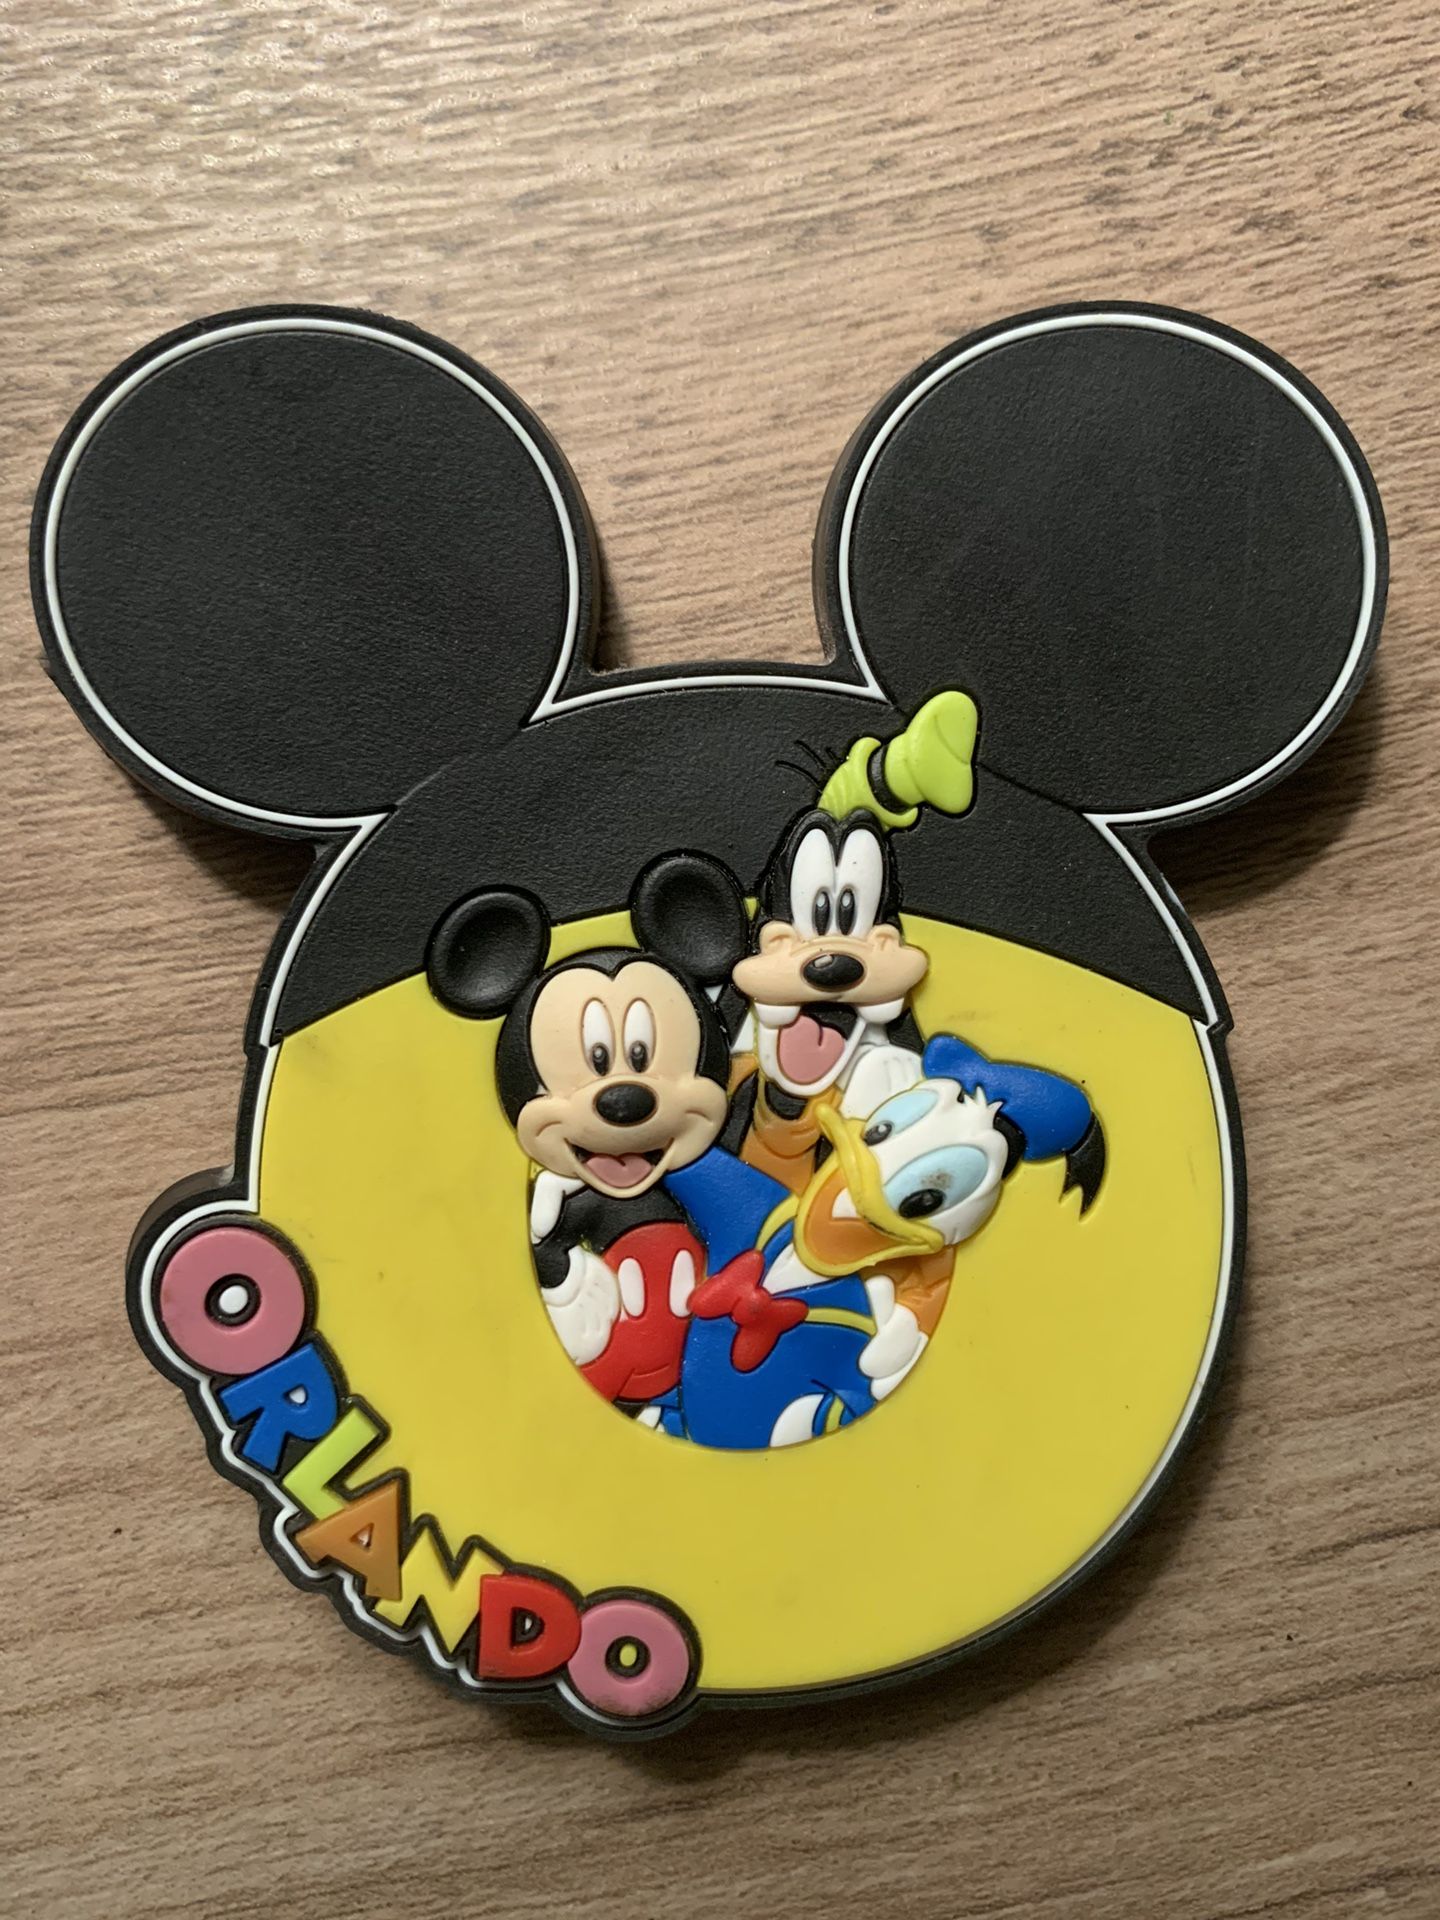 Disney Orlando Mickey Mouse Goofy Donald Duck Souvenir Magnet 